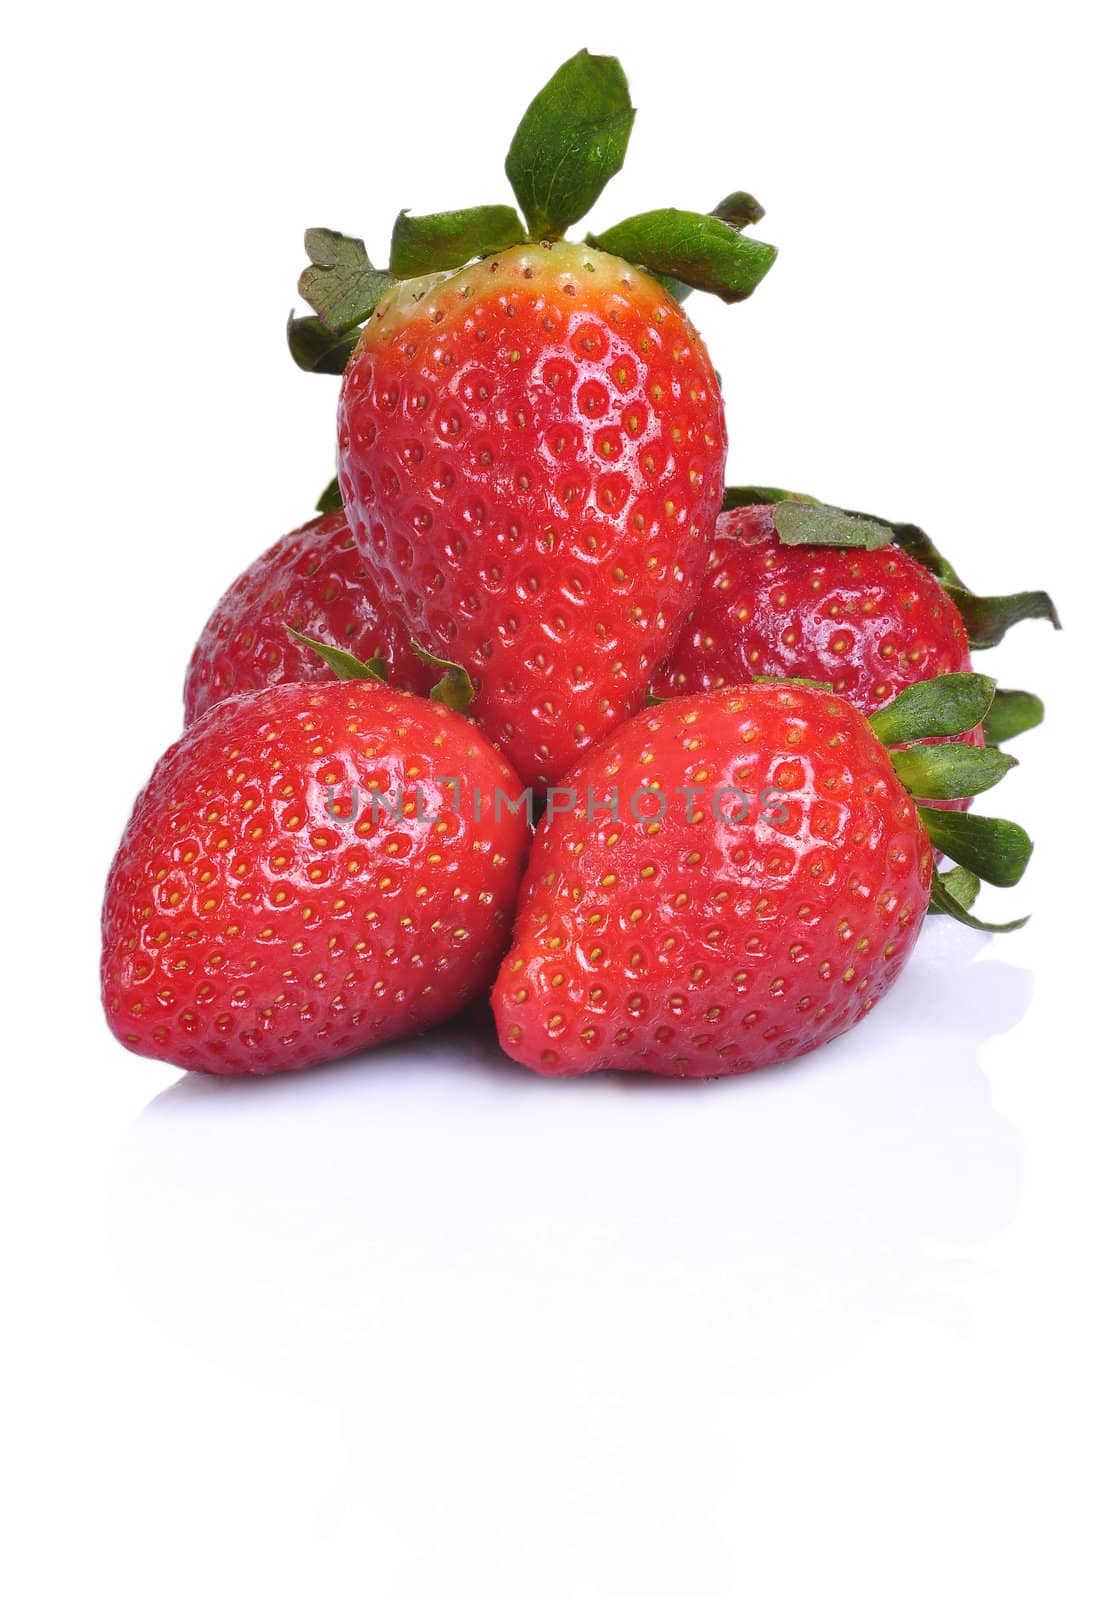 Pile of Strawberries by ruigsantos